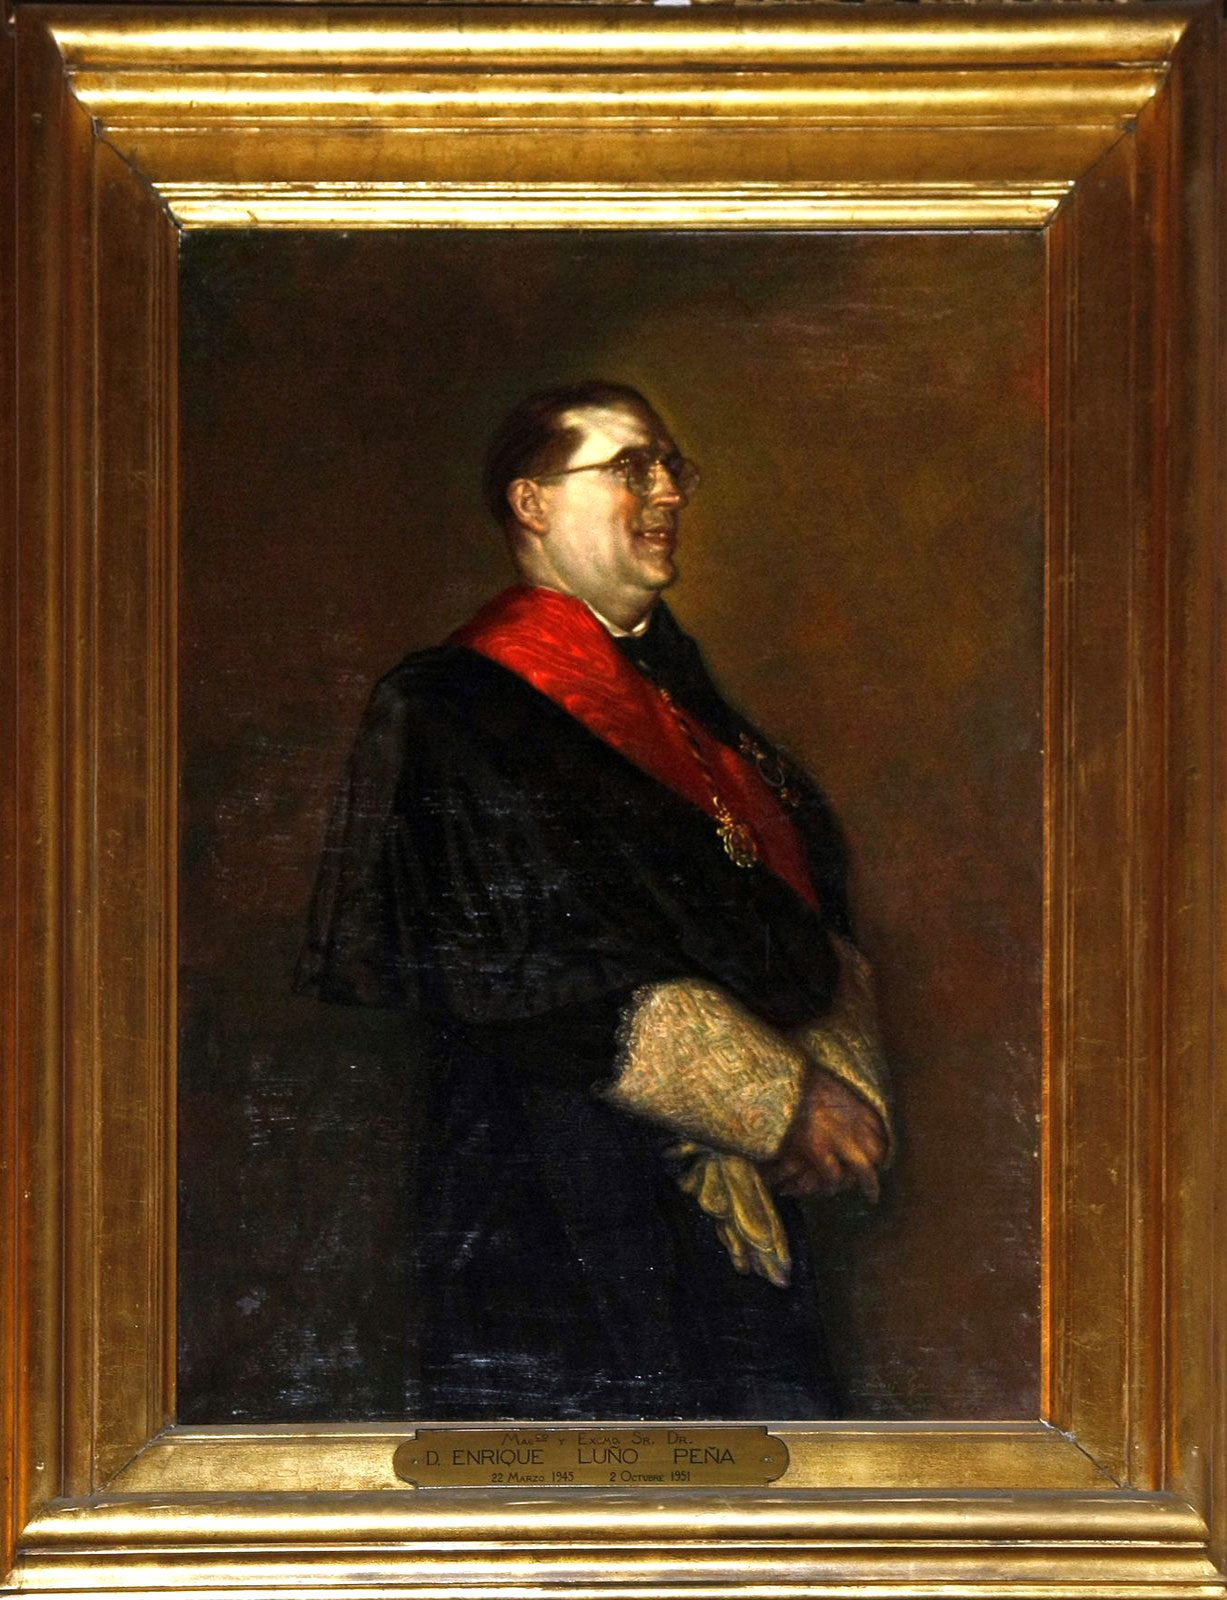 Retrat del rector Enrique Luño Peña